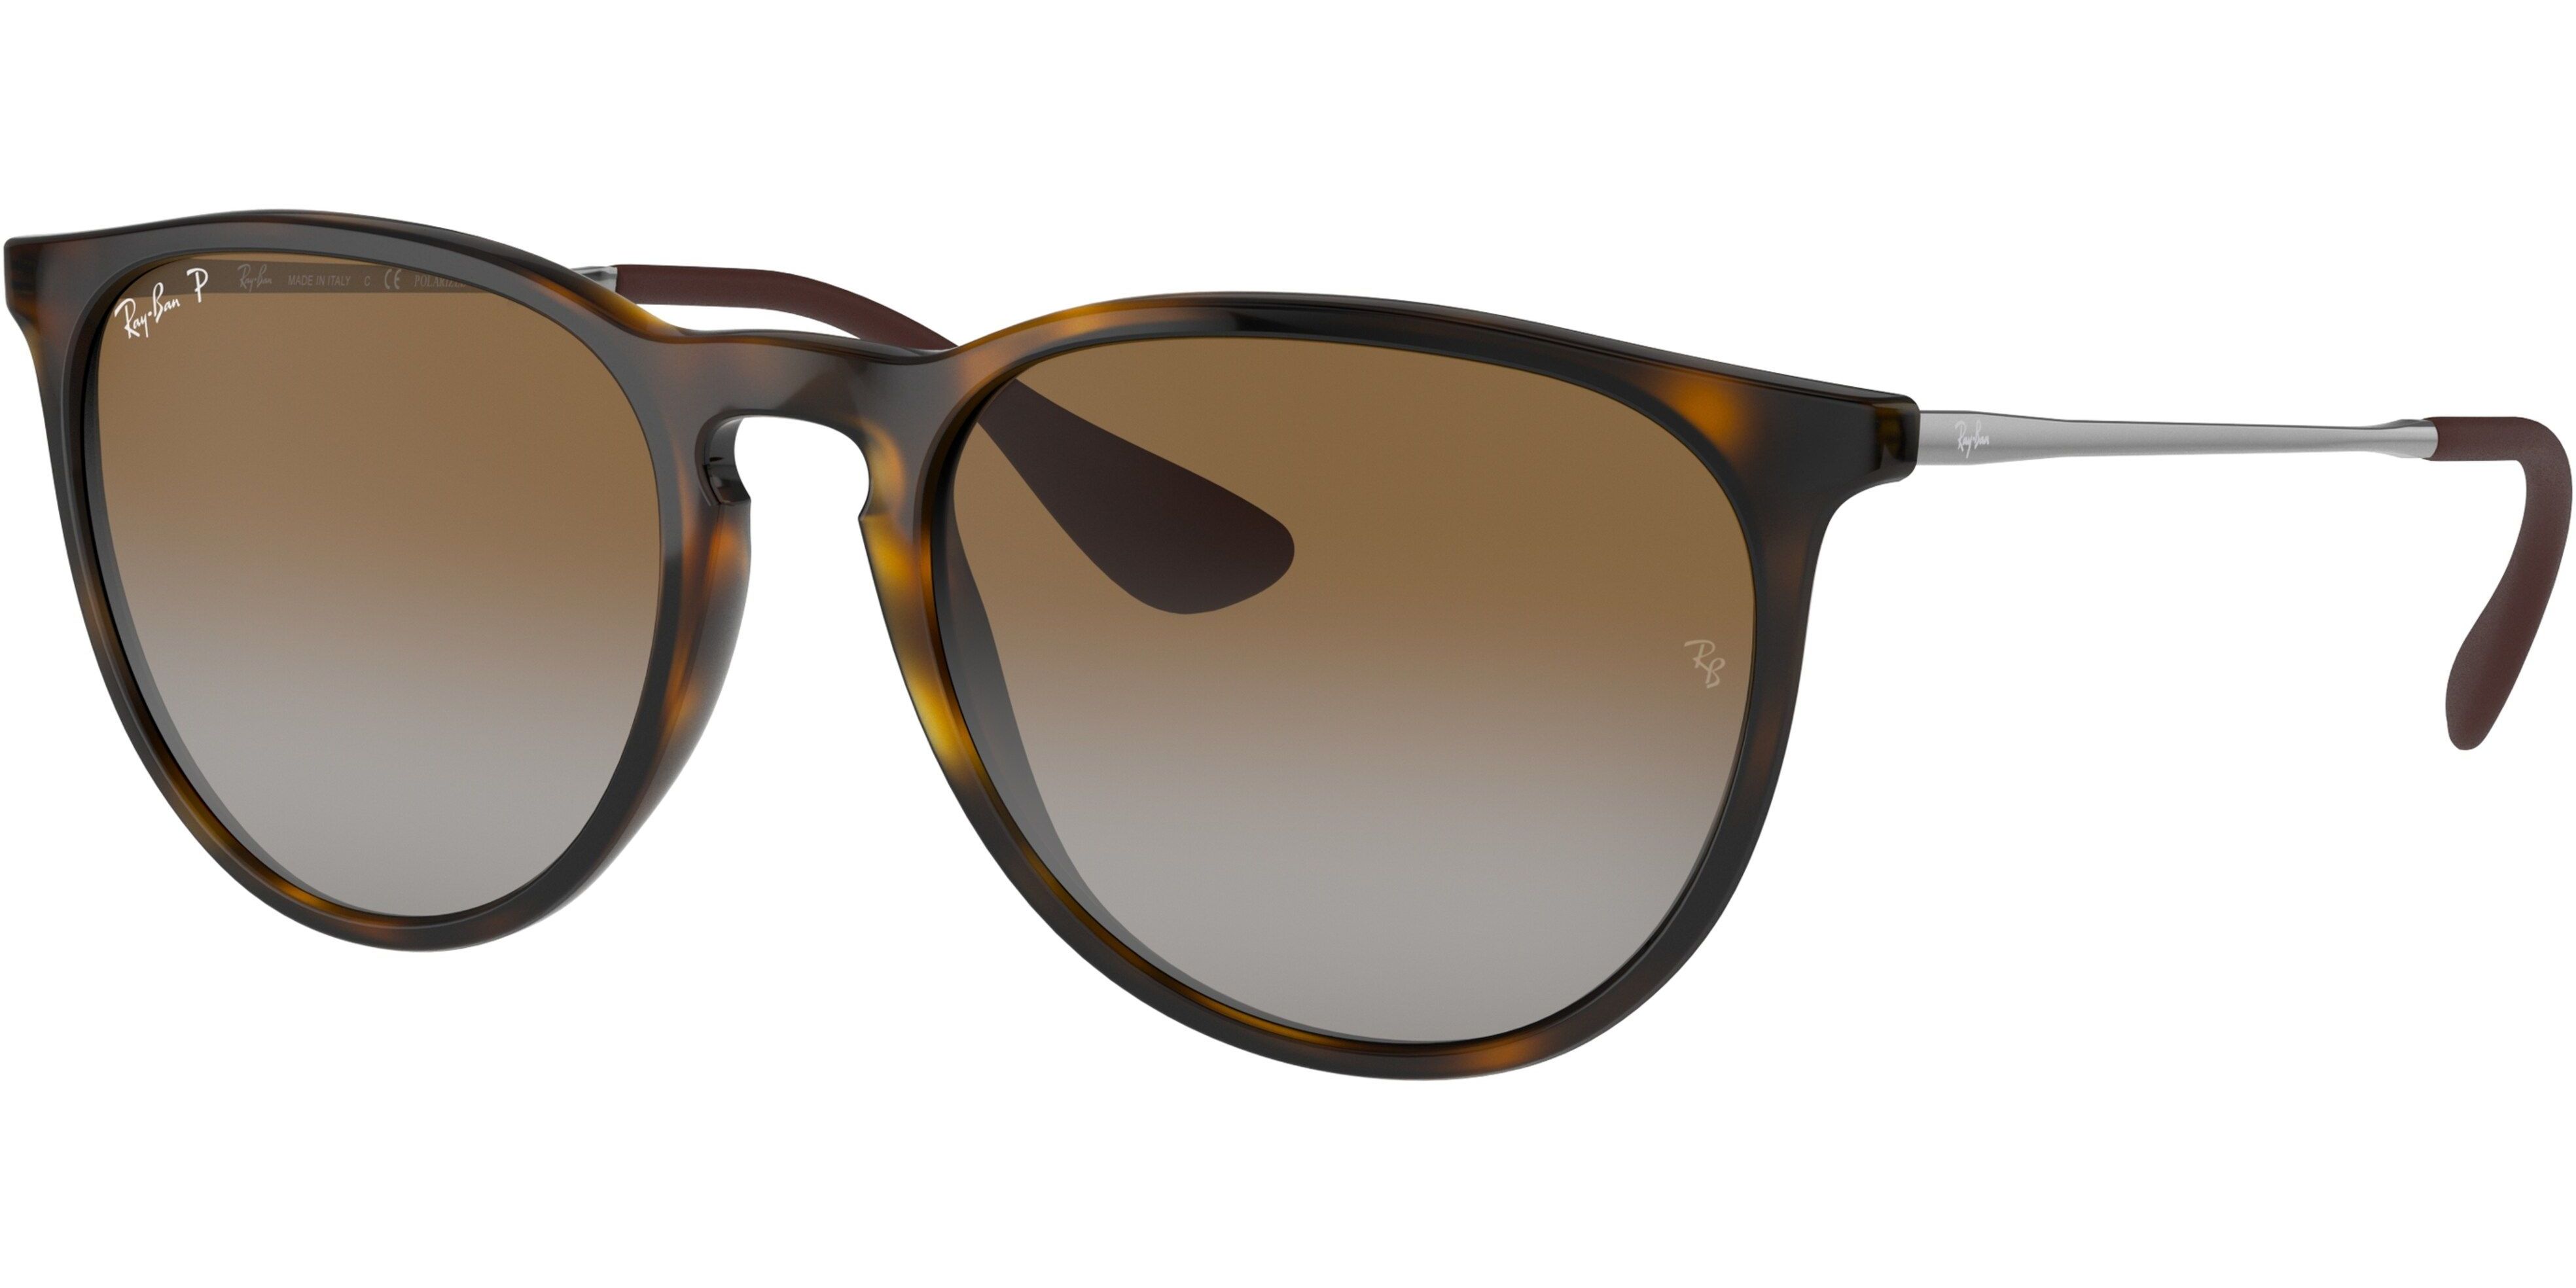 Sluneční brýle Ray-Ban® model 4171, barva obruby hnědá lesk stříbrná, čočka hnědá gradál polarizovaná, kód barevné varianty 710T5. 